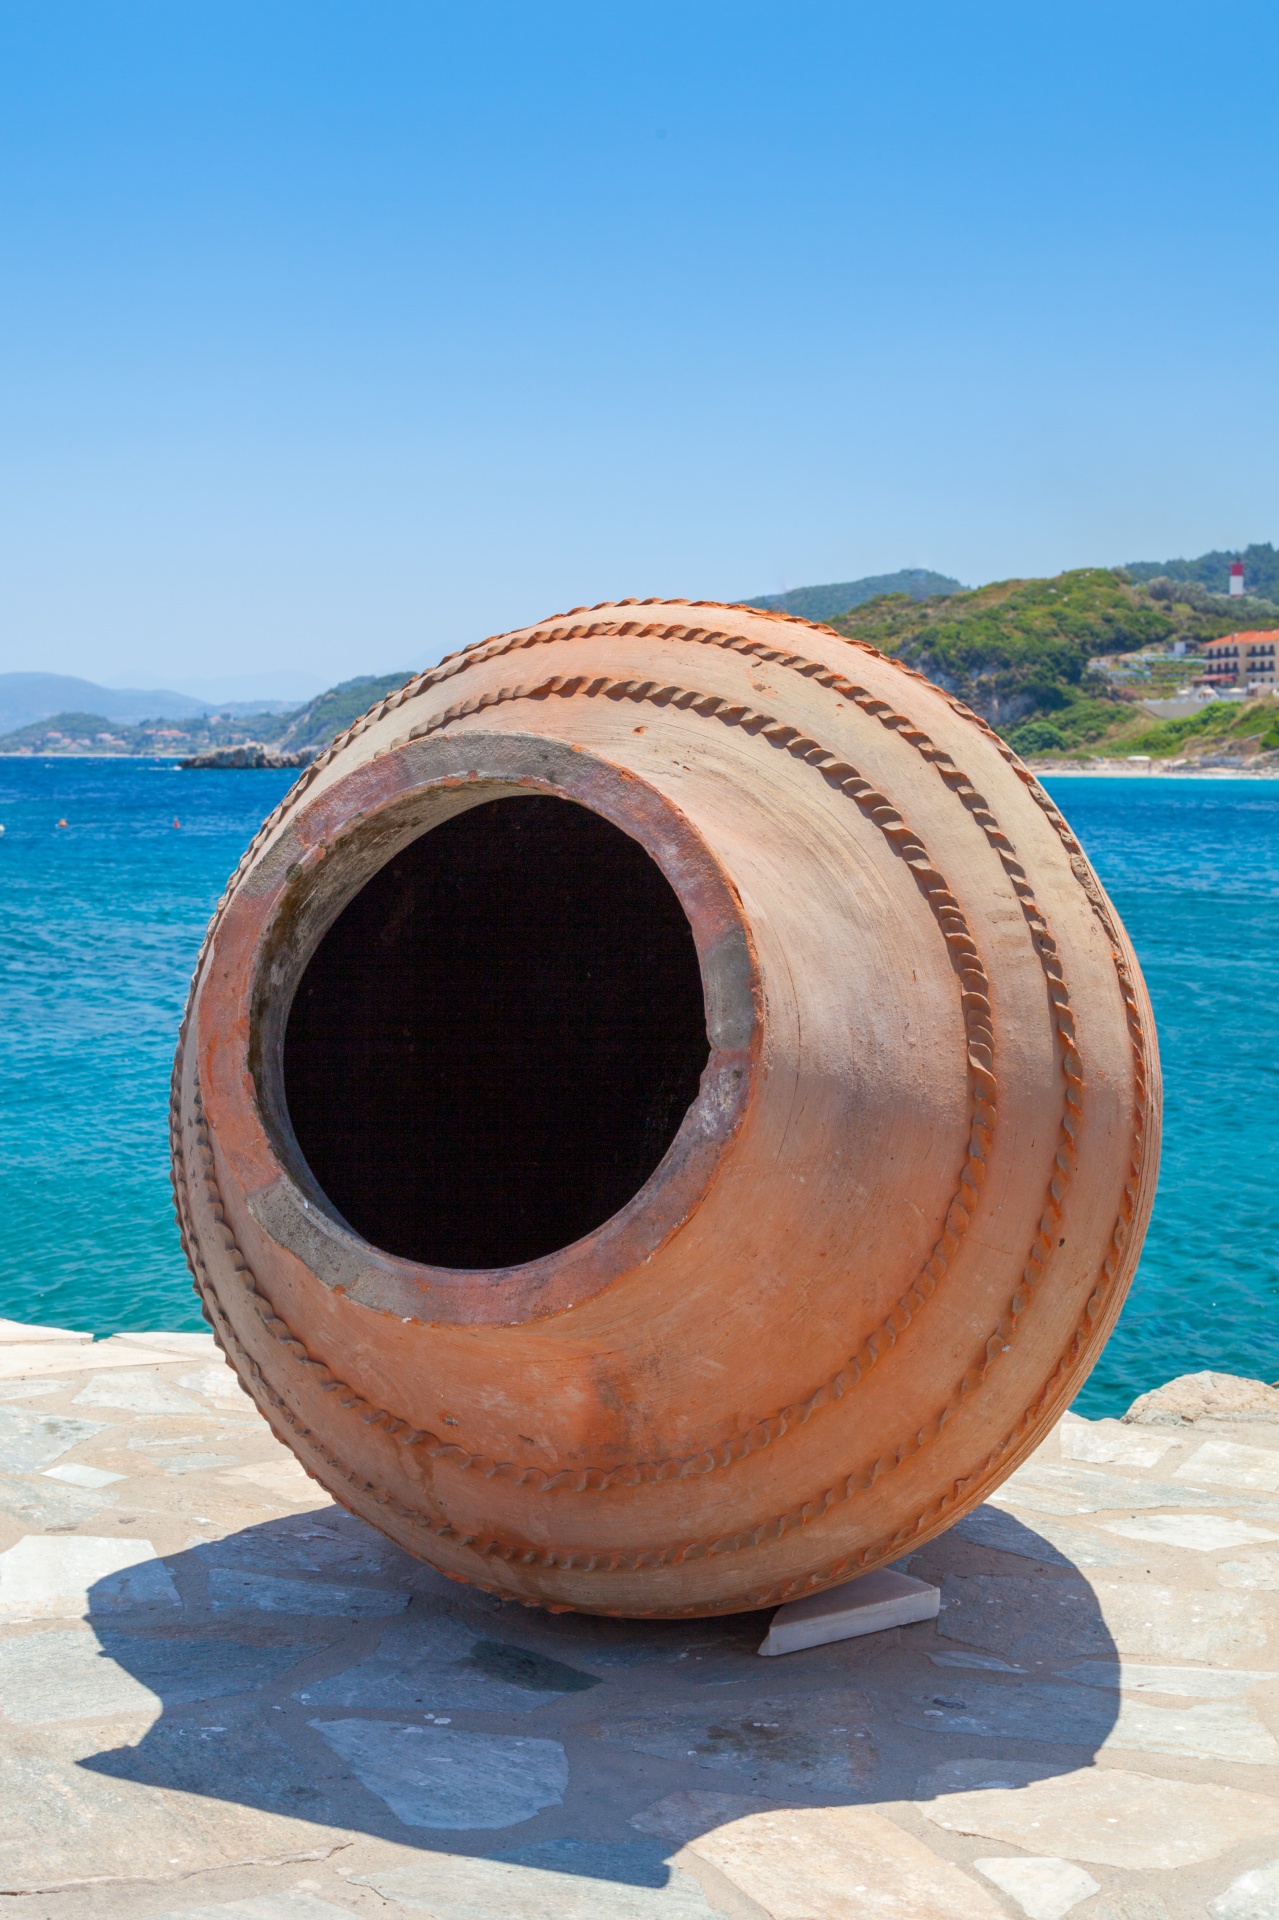 Amphora,  Įlanka,  Mėlynas,  Keramika,  Europa,  Graikija,  Graikų Kalba,  Kokkari,  Viduržemio Jūros,  Samos